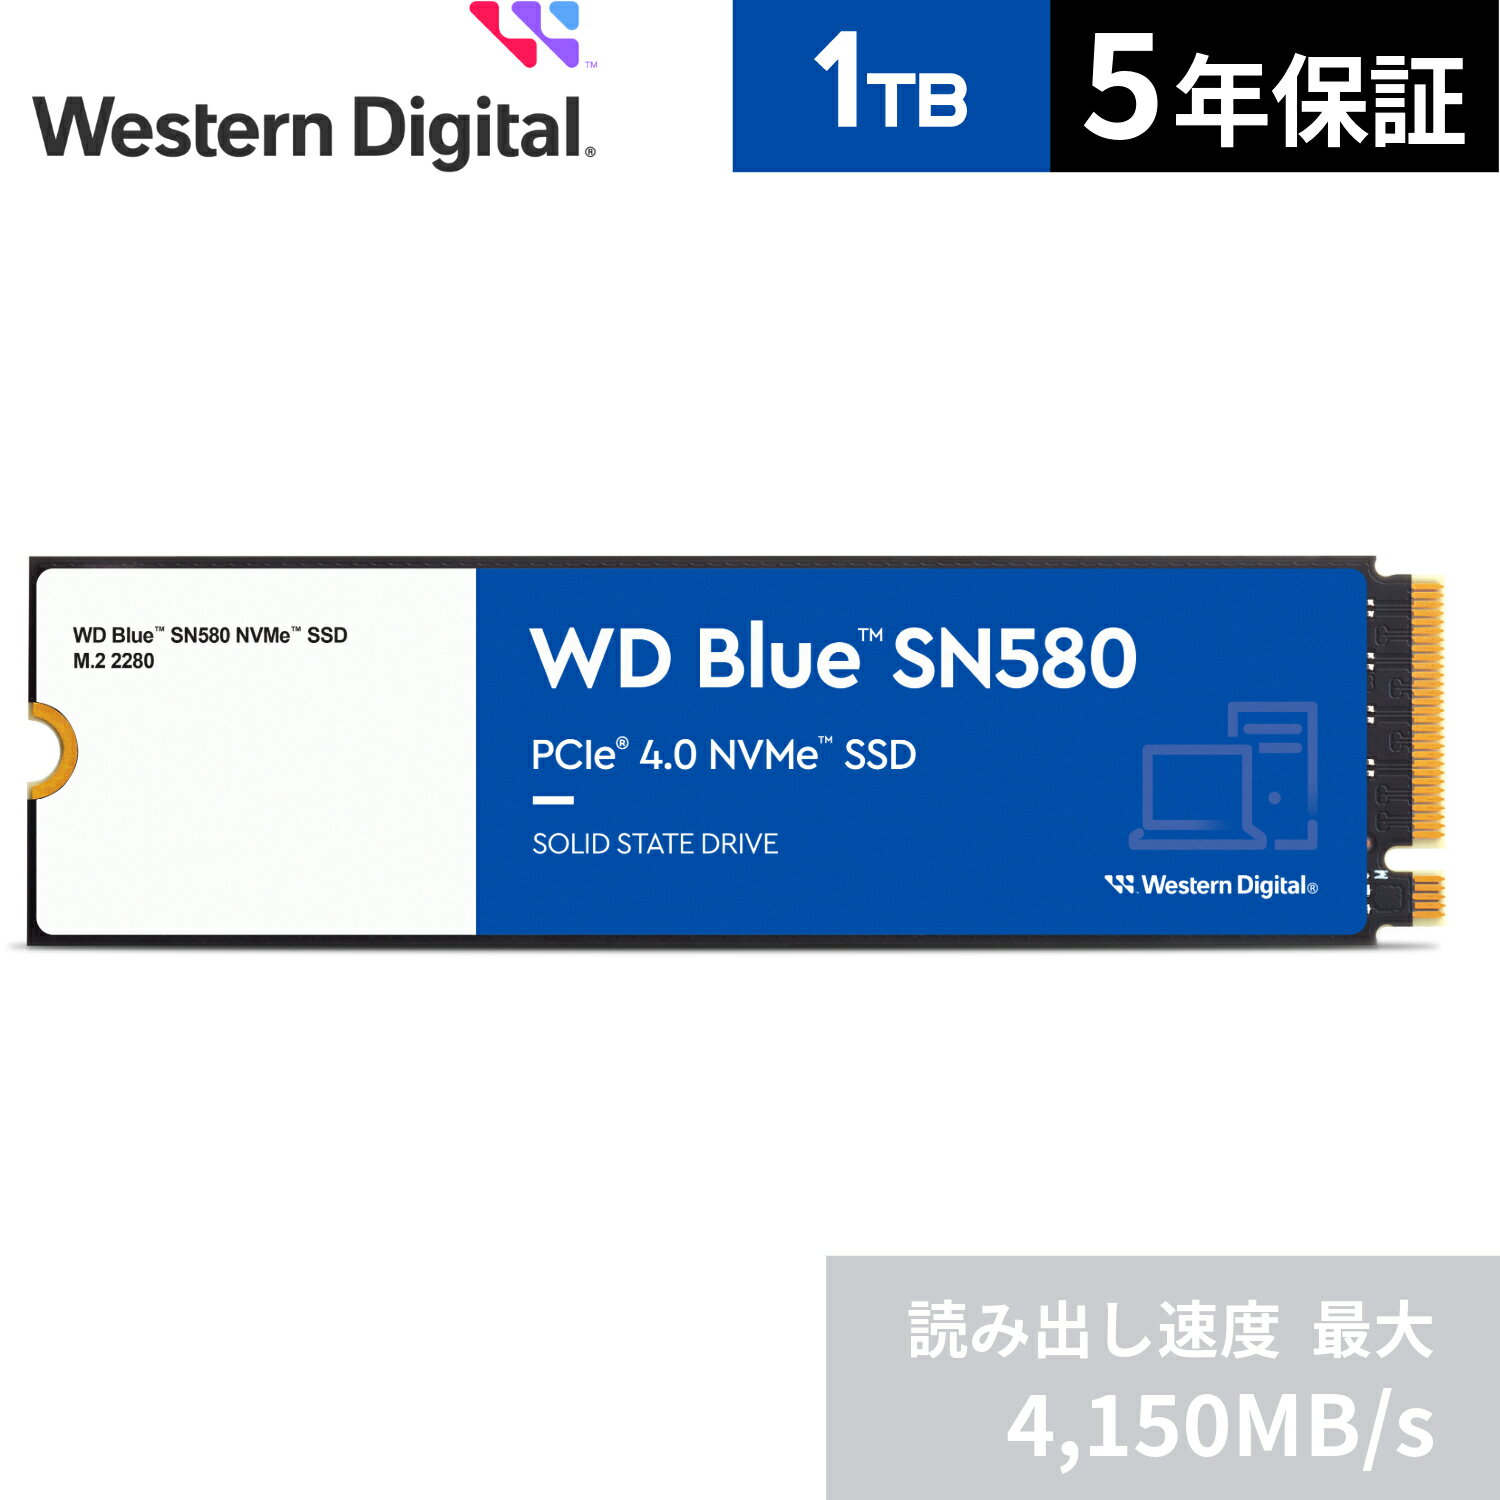 【国内正規流通品】Western Digital ウエスタンデジタル WD Blue SN580 M.2-2280 NVMe SSD 1TB (読取り最大 4,150MB/秒) 5年保証 WDS100T3B0E 省電力 SATA デスクトップPC ノートPC 増設 クリエイティブ 長寿命 増設 高速 PCパーツ 内蔵ssd